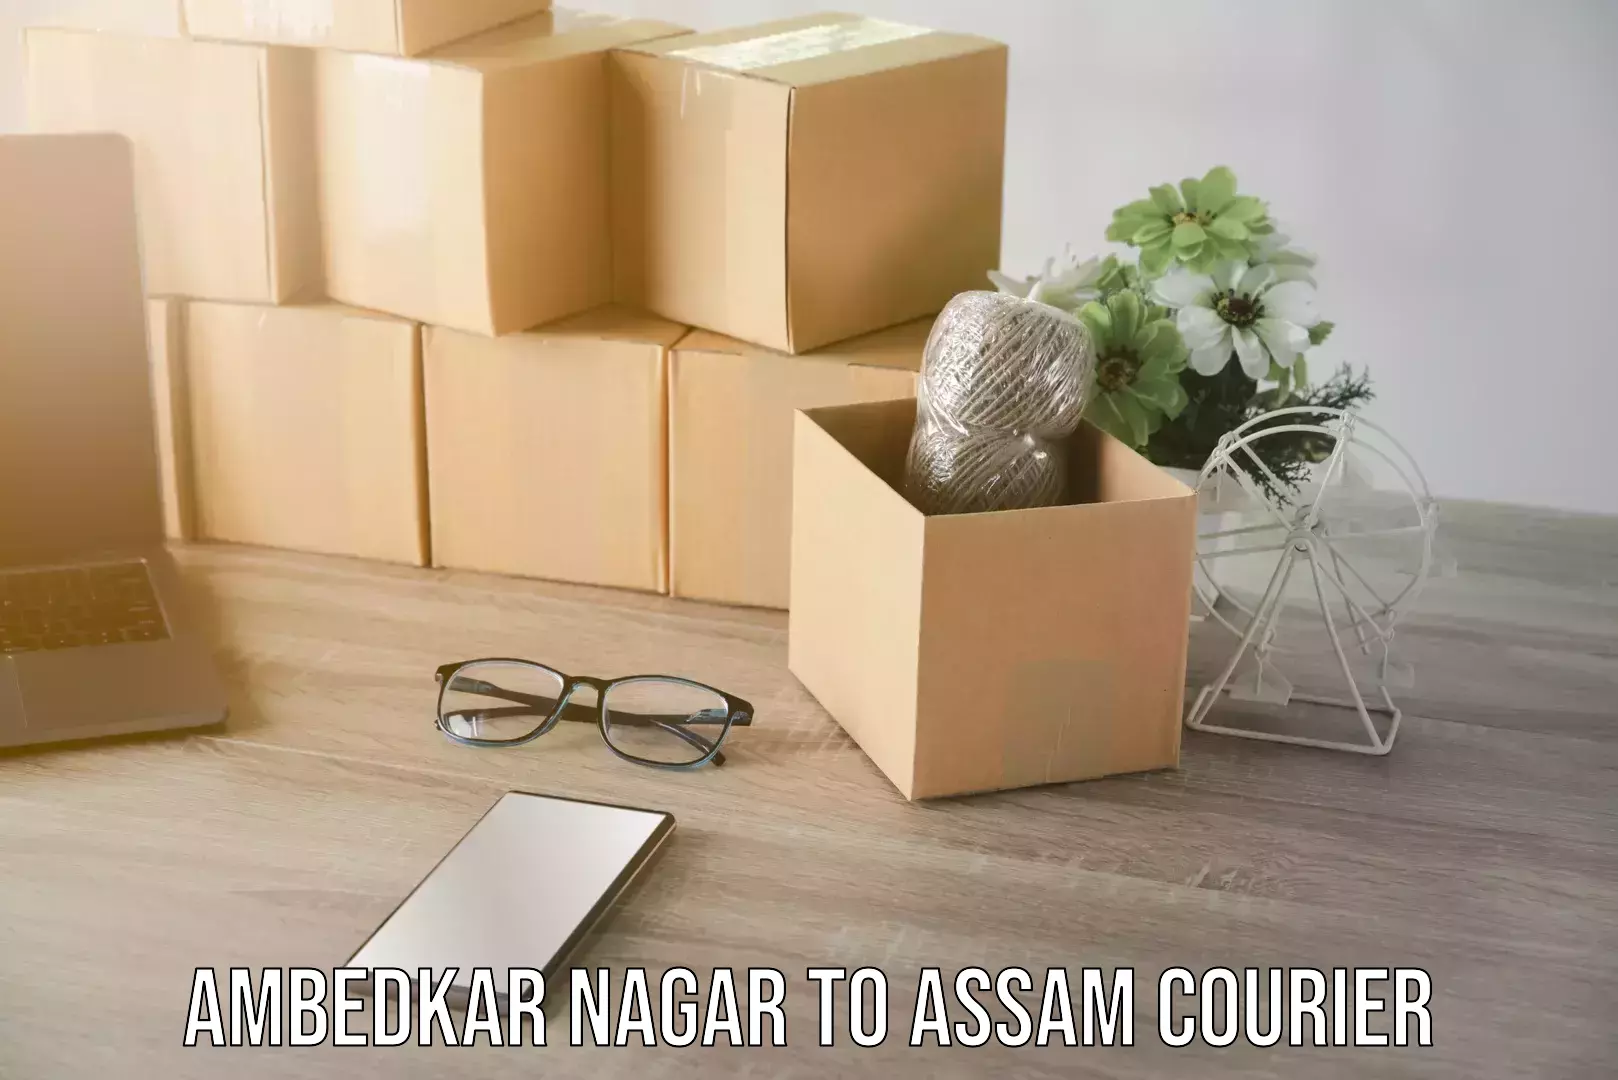 Nationwide courier service Ambedkar Nagar to Assam